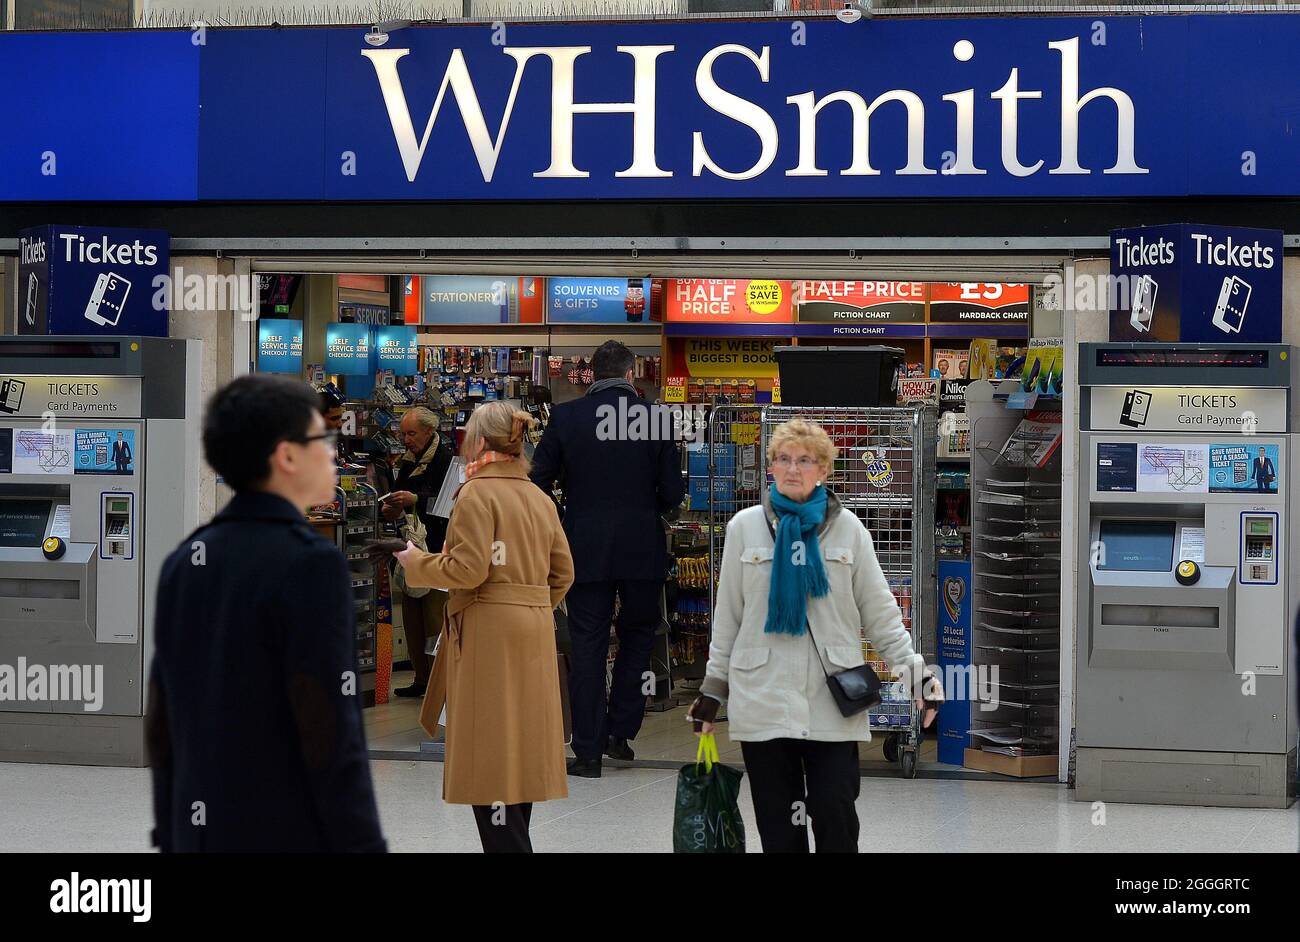 Foto di archivio datata 16/1/2014 di una filiale di WH Smith nel centro di Londra. WH Smith ha dichiarato che le sue vendite per l'anno scorso dovrebbero essere "leggermente più avanti" delle aspettative, in quanto la sua attività di viaggio ha continuato la sua ripresa nelle ultime settimane. Il gruppo retail ha rivelato che le vendite totali nei sei mesi fino all'agosto 31 erano pari al 65% dei livelli pre-pandemici rispetto allo stesso periodo del 2019. Data di emissione: Mercoledì 1 settembre 2021. Foto Stock